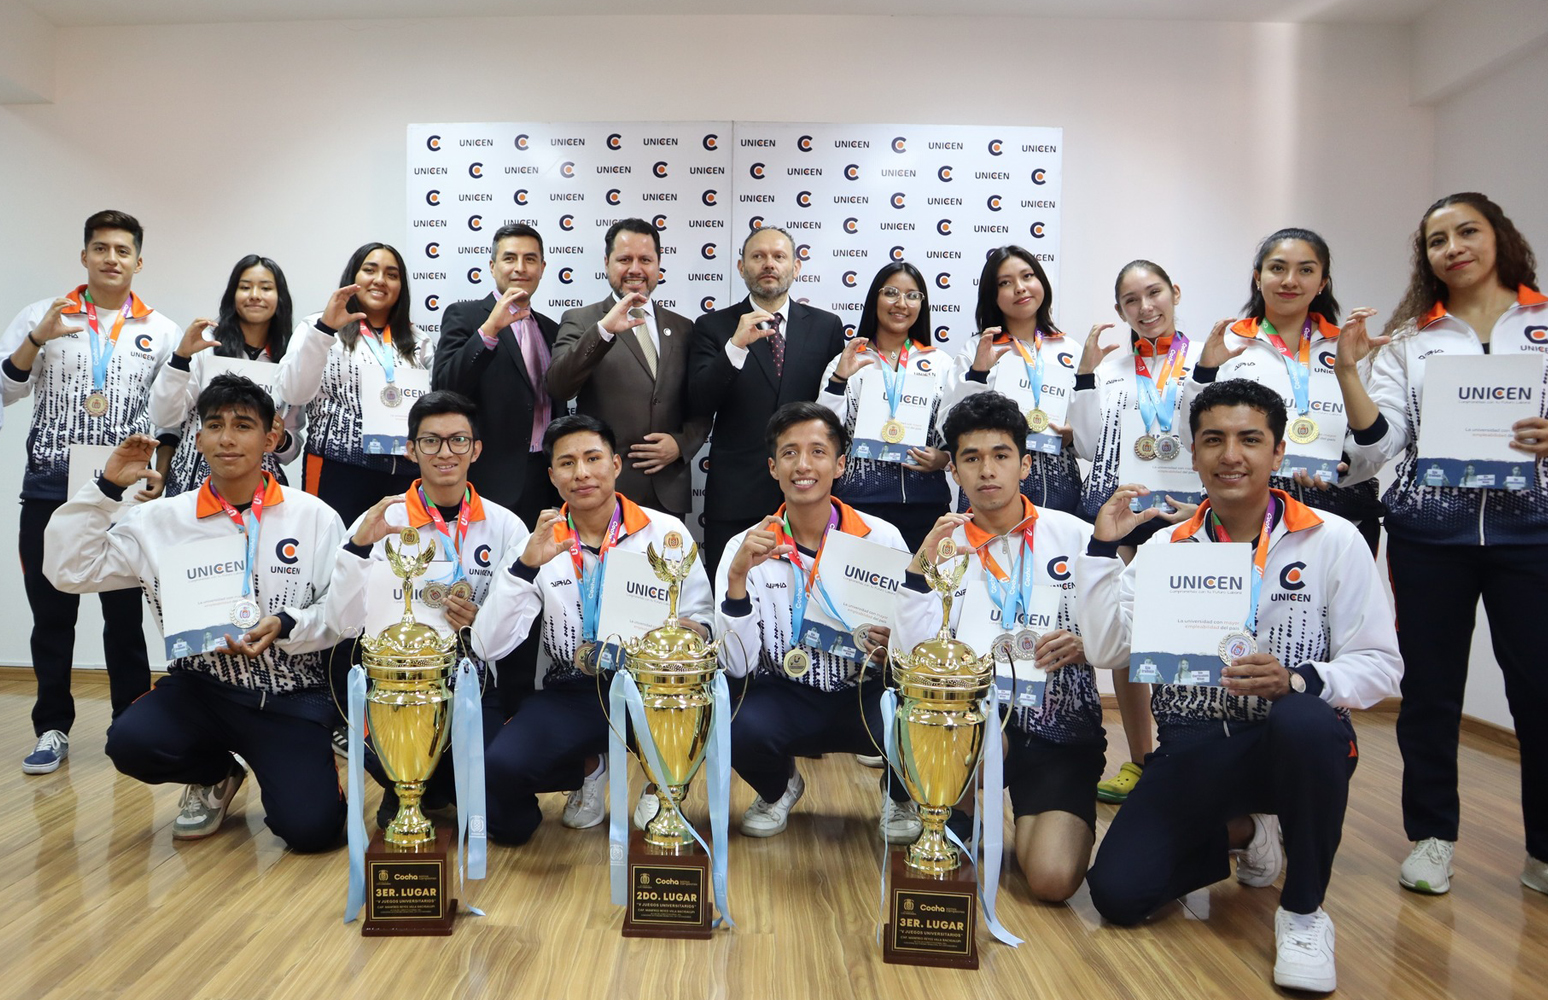 Entrega de reconocimientos a medalleros de los Juegos Universitarios Cap. Manfred Reyes Villa